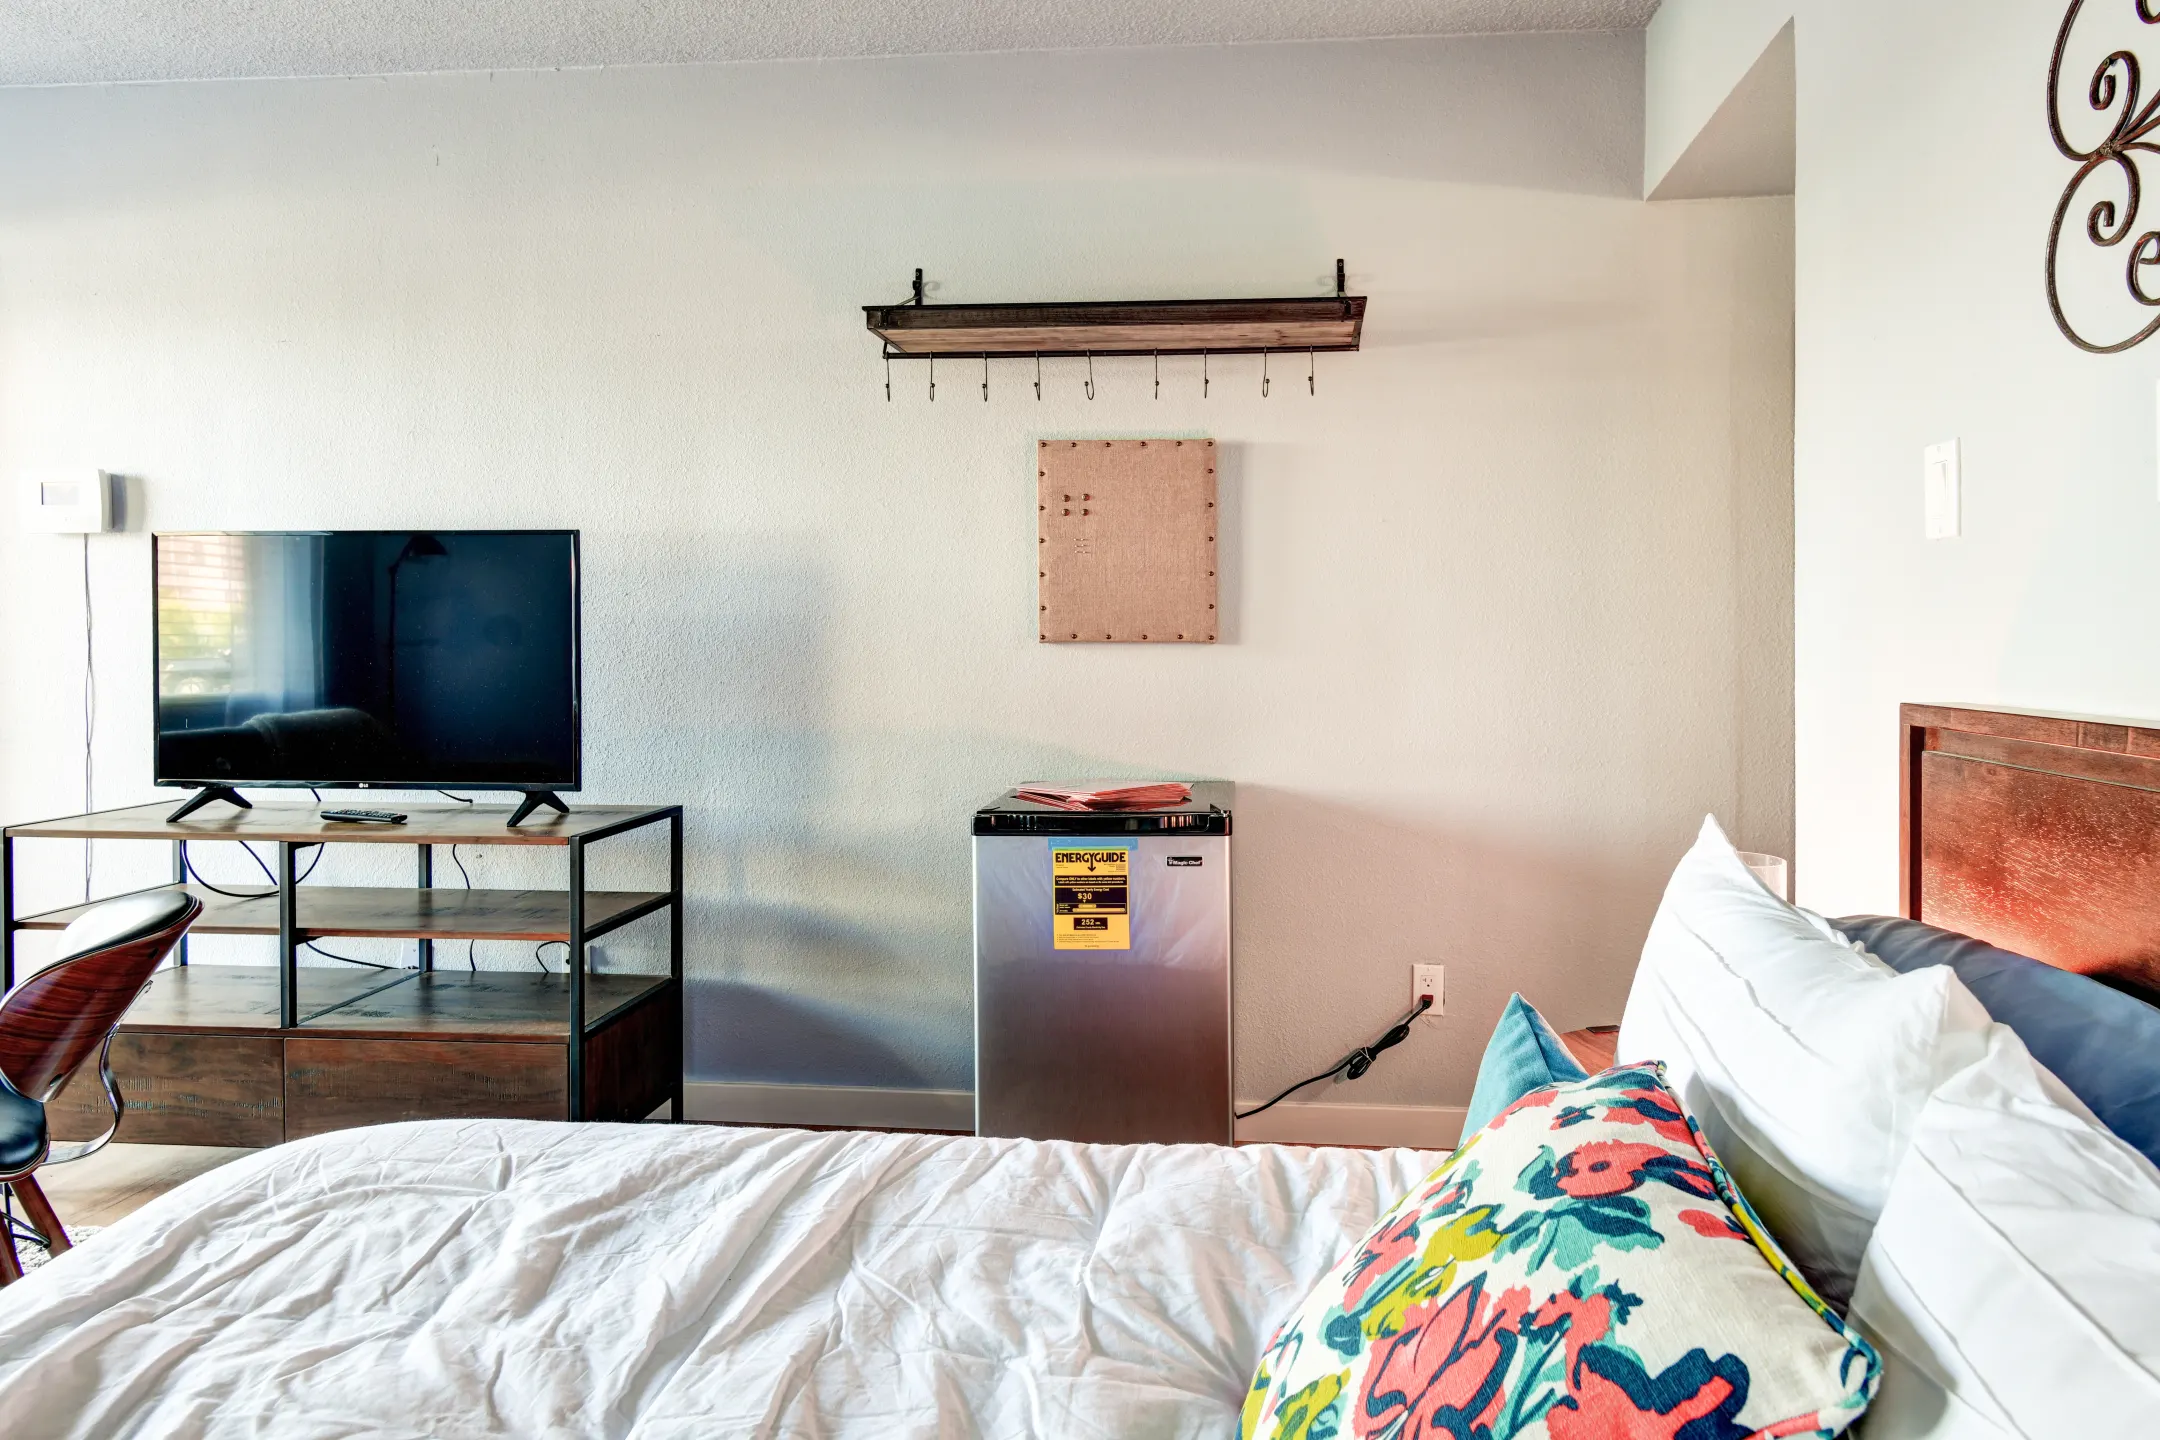 Bedroom - Renova Flats - Reno, NV